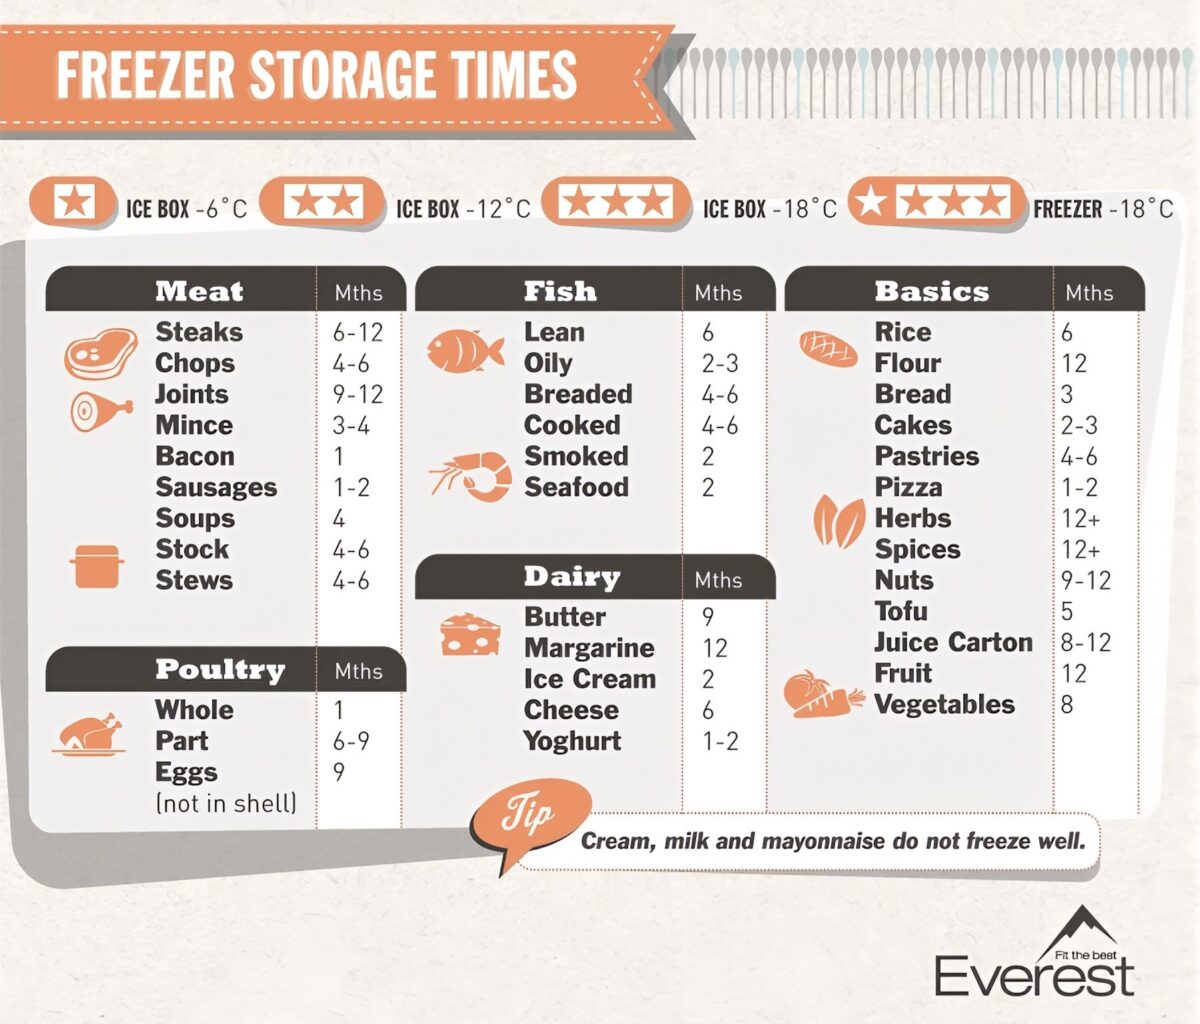 Freezer storage times cheat sheet chart.